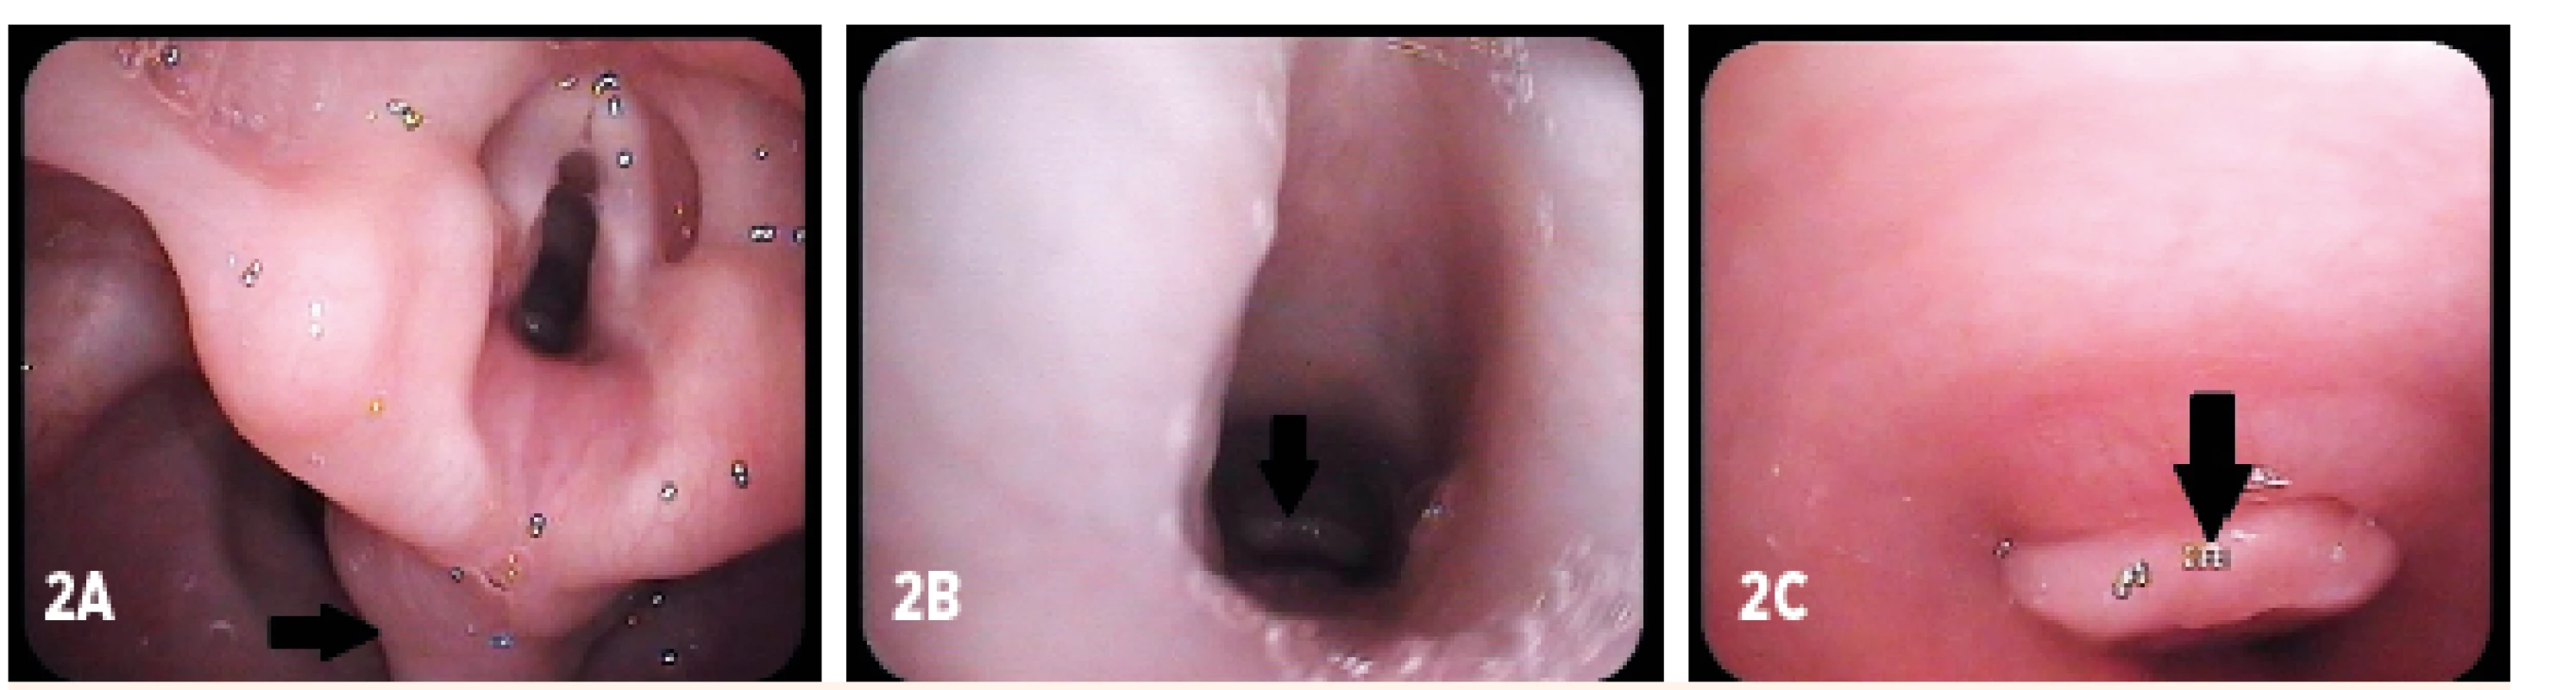 Kontrolná fibroskópia (vek dieťaťa 17 mesiacov). A – prolaps sliznice postkrikoidnej oblasti (šípka), B, C – granulácia v oblasti tracheostómie (šípka)
Fig. 2. Control fibroendoscopy (age of child 17 months). A – mucosal prolaps in the postcricoid area (arrow), B, C – granulation above the tracheostomy (arrow)